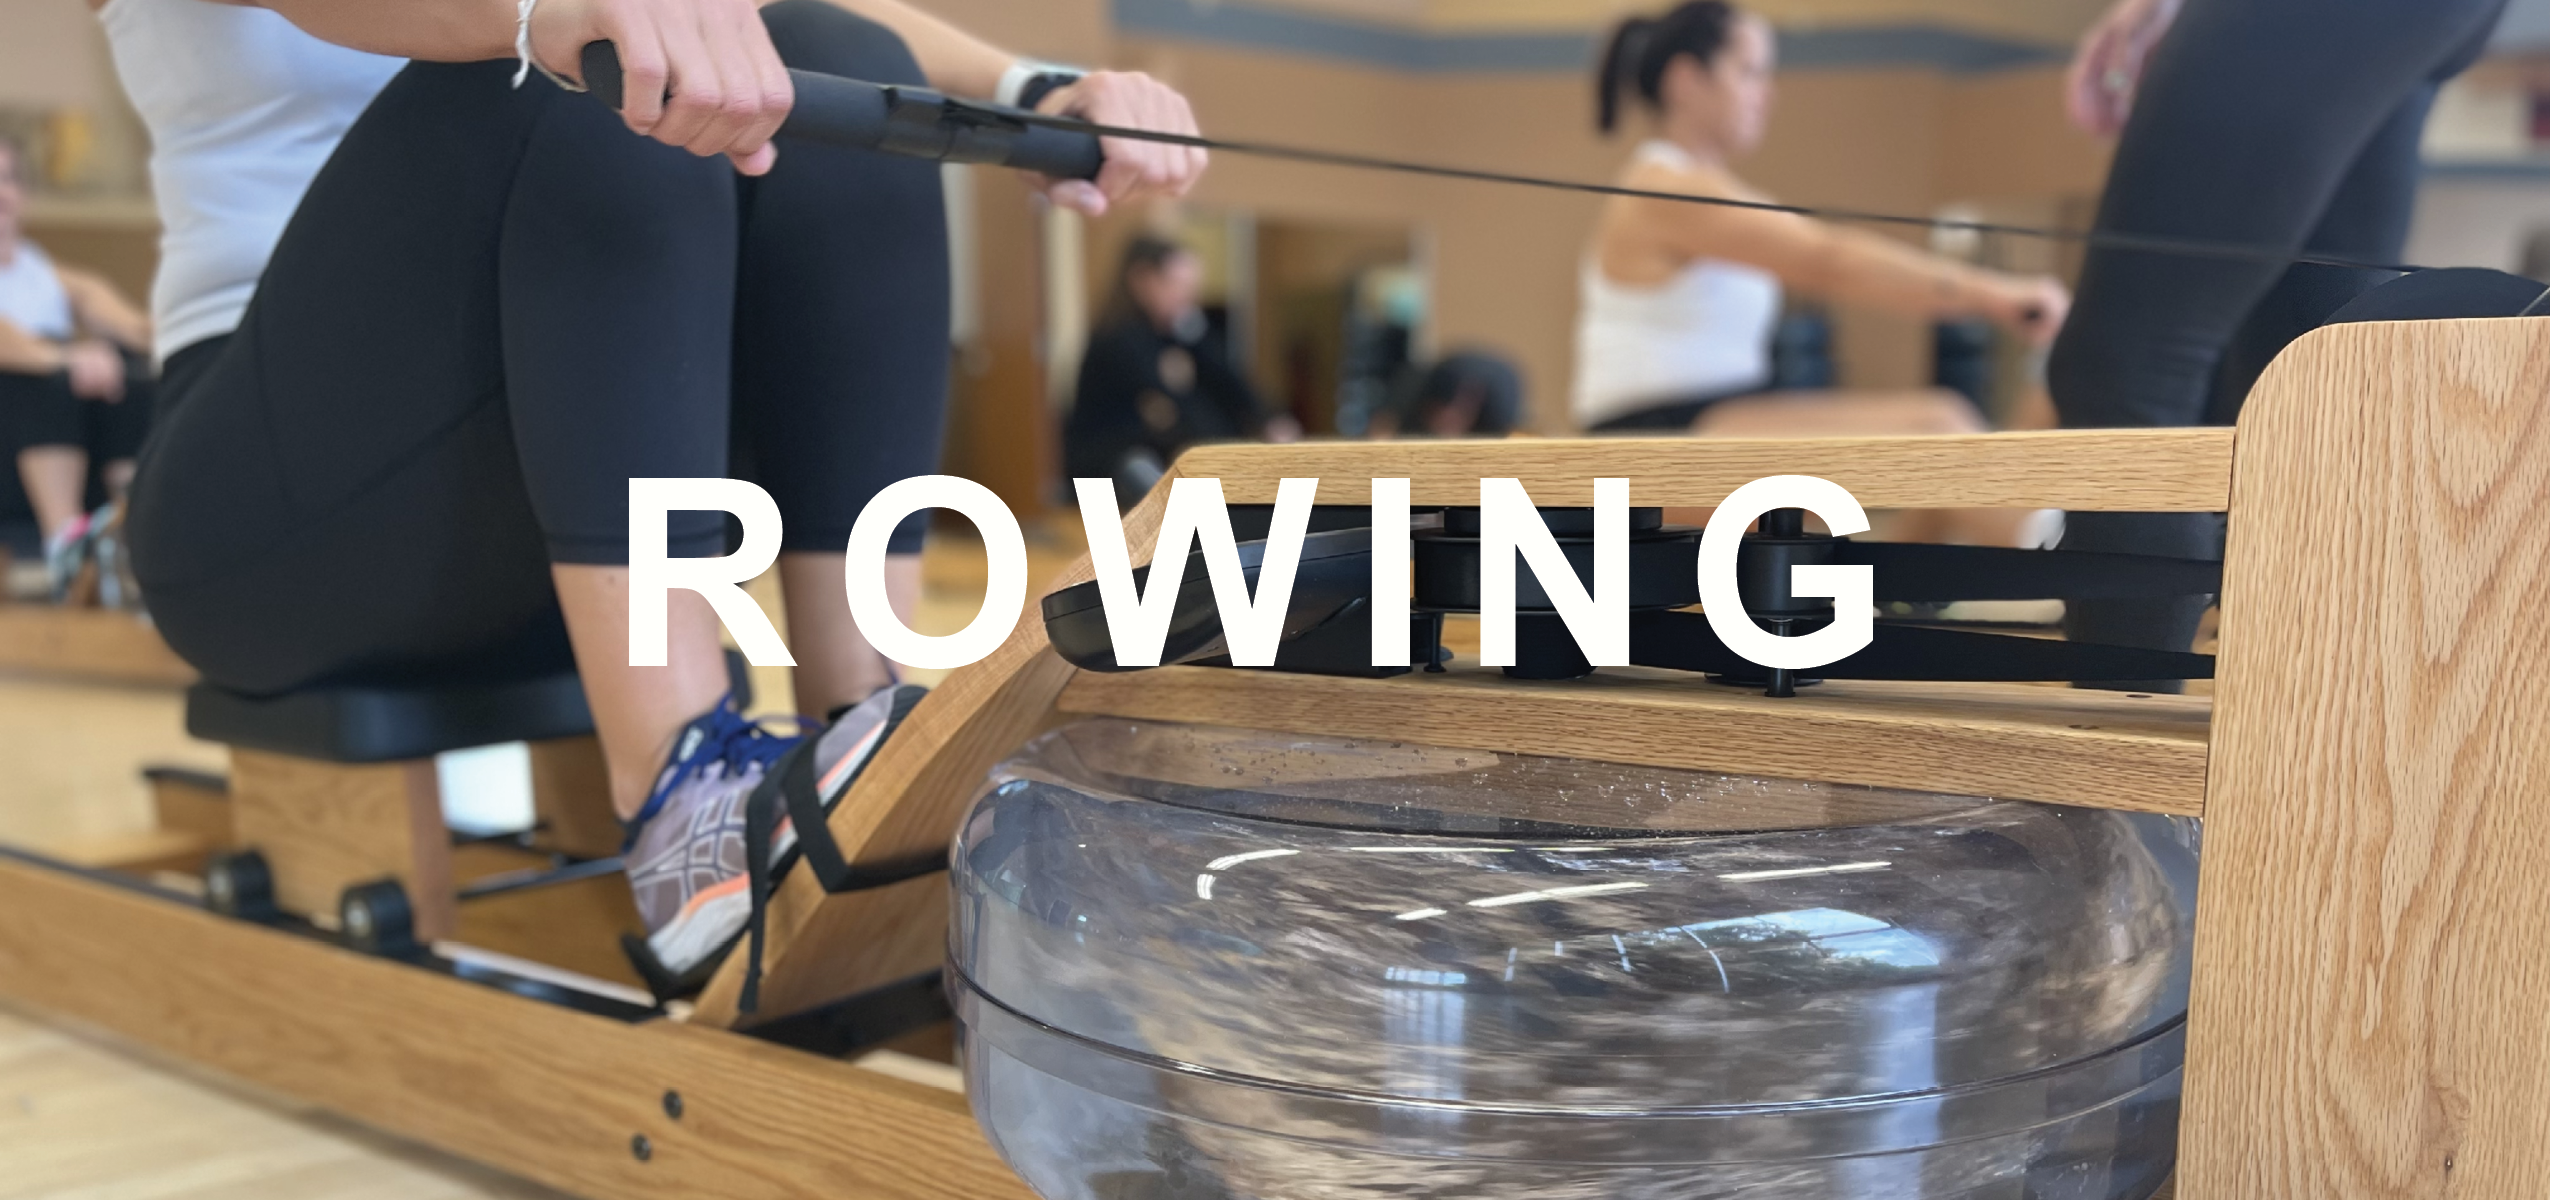 Wilson's Rowing